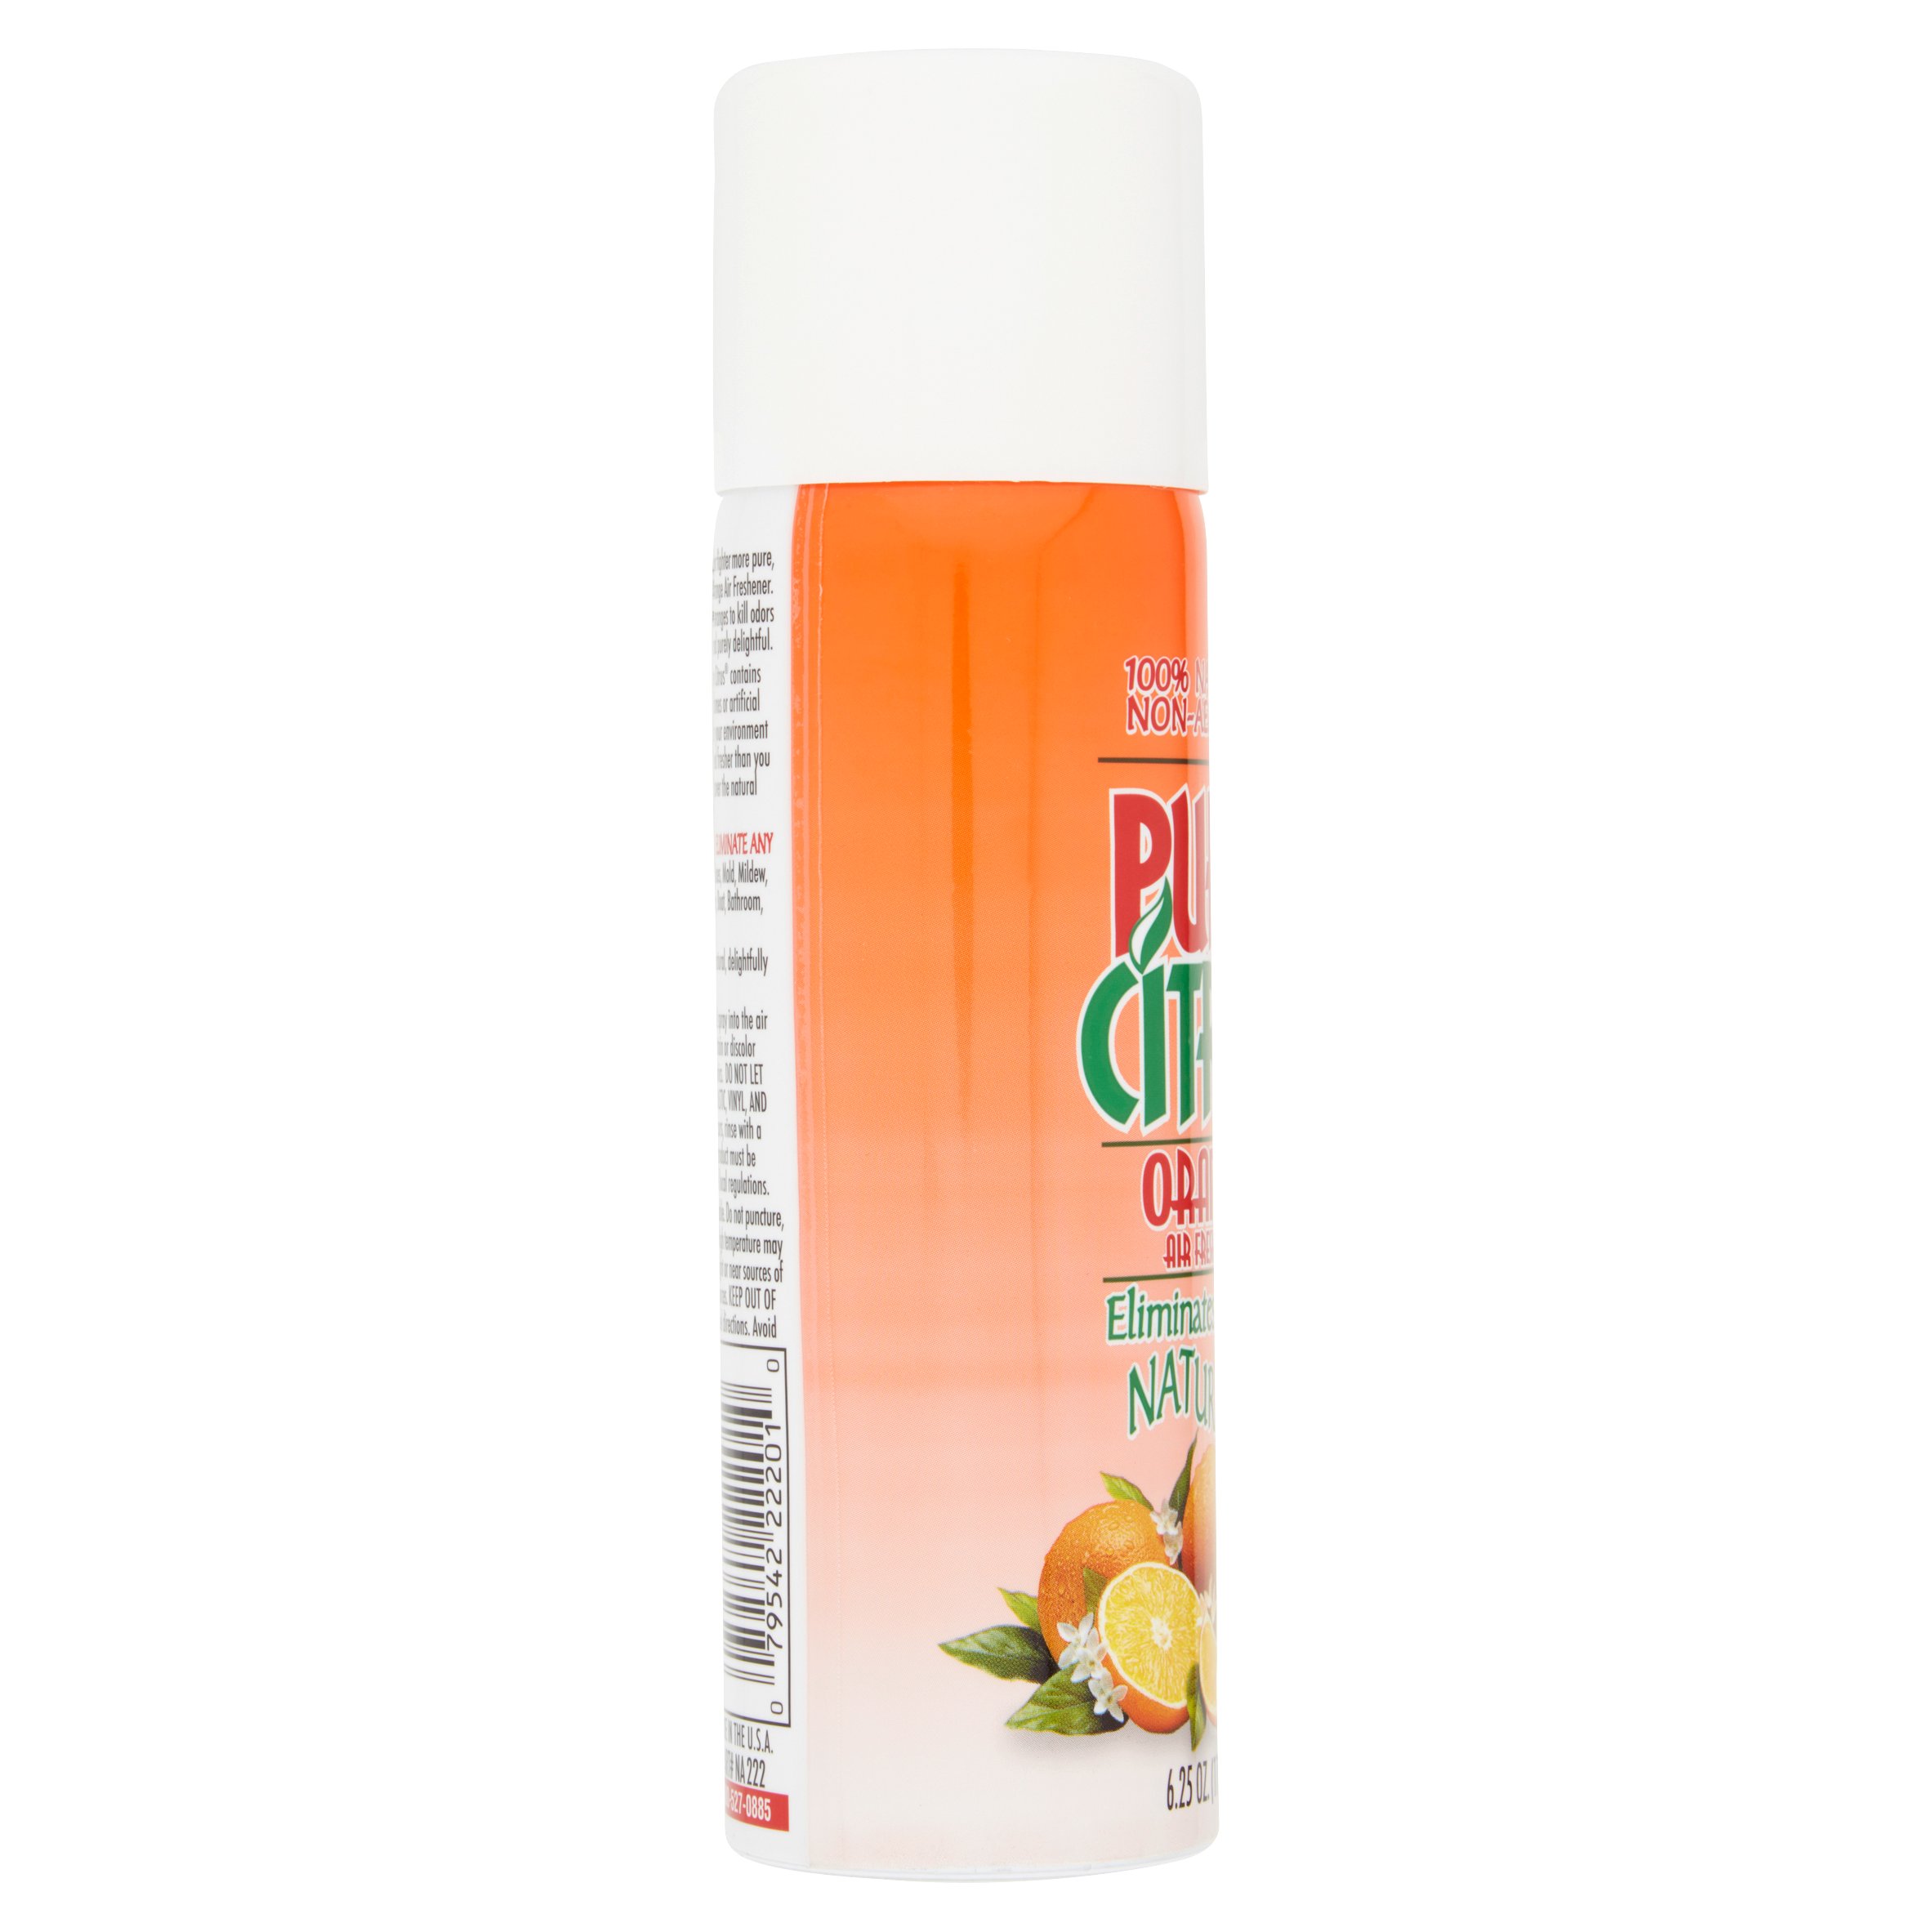 Pure Citrus Orange Air Freshener, 6.25 oz - image 3 of 5